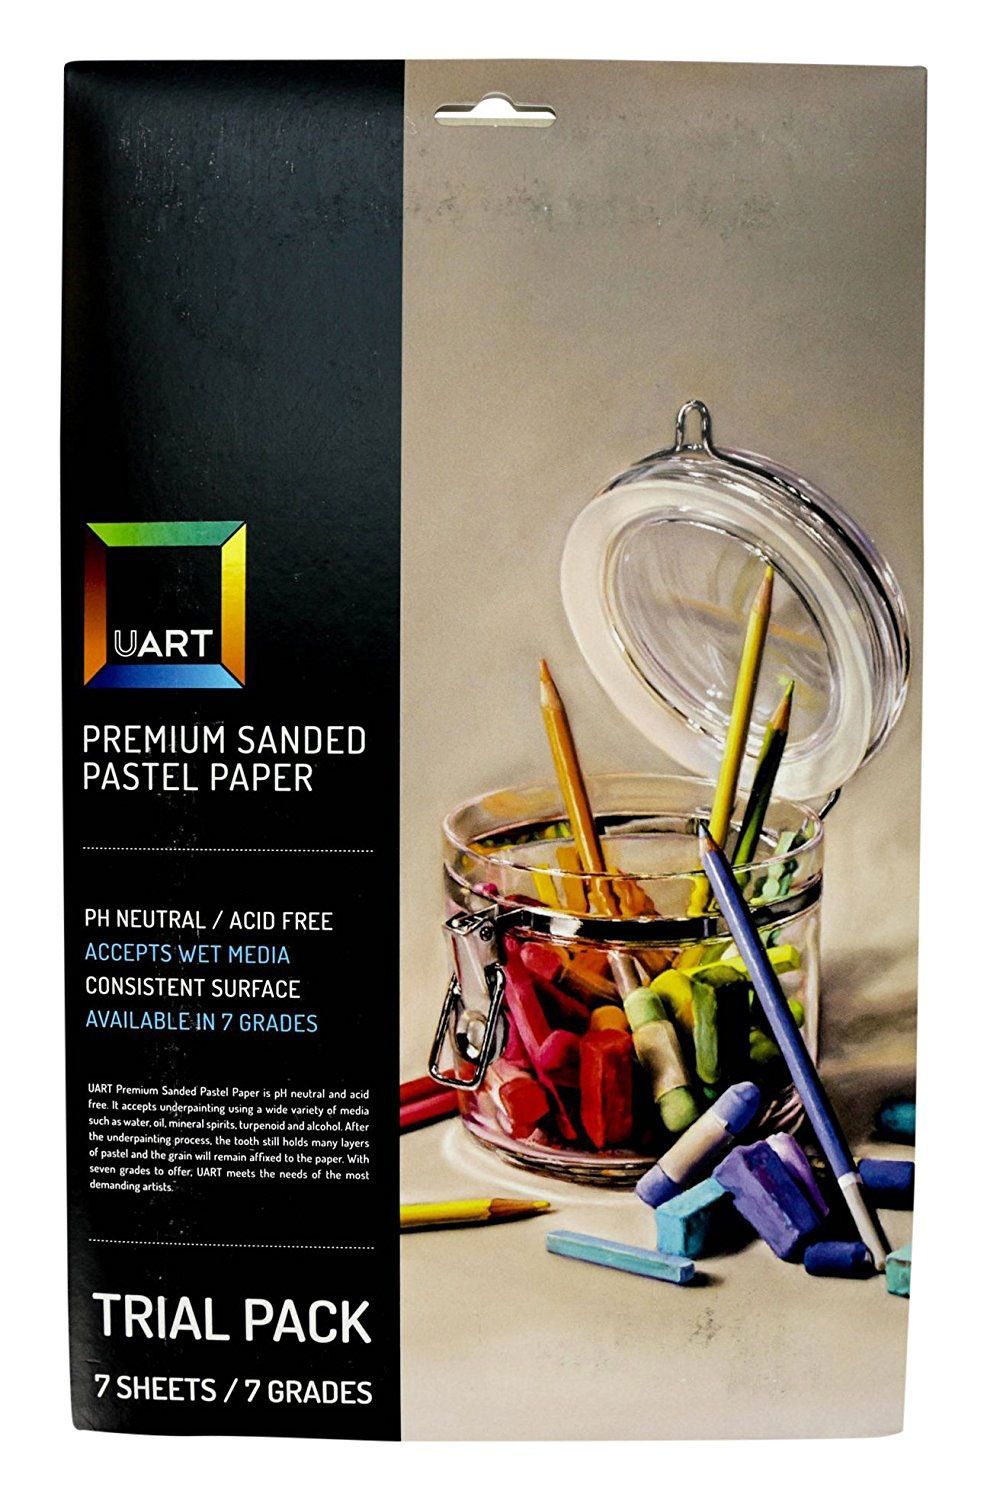 UART Premium Sanded Pastel Paper, 7 Grade Trial Pkg